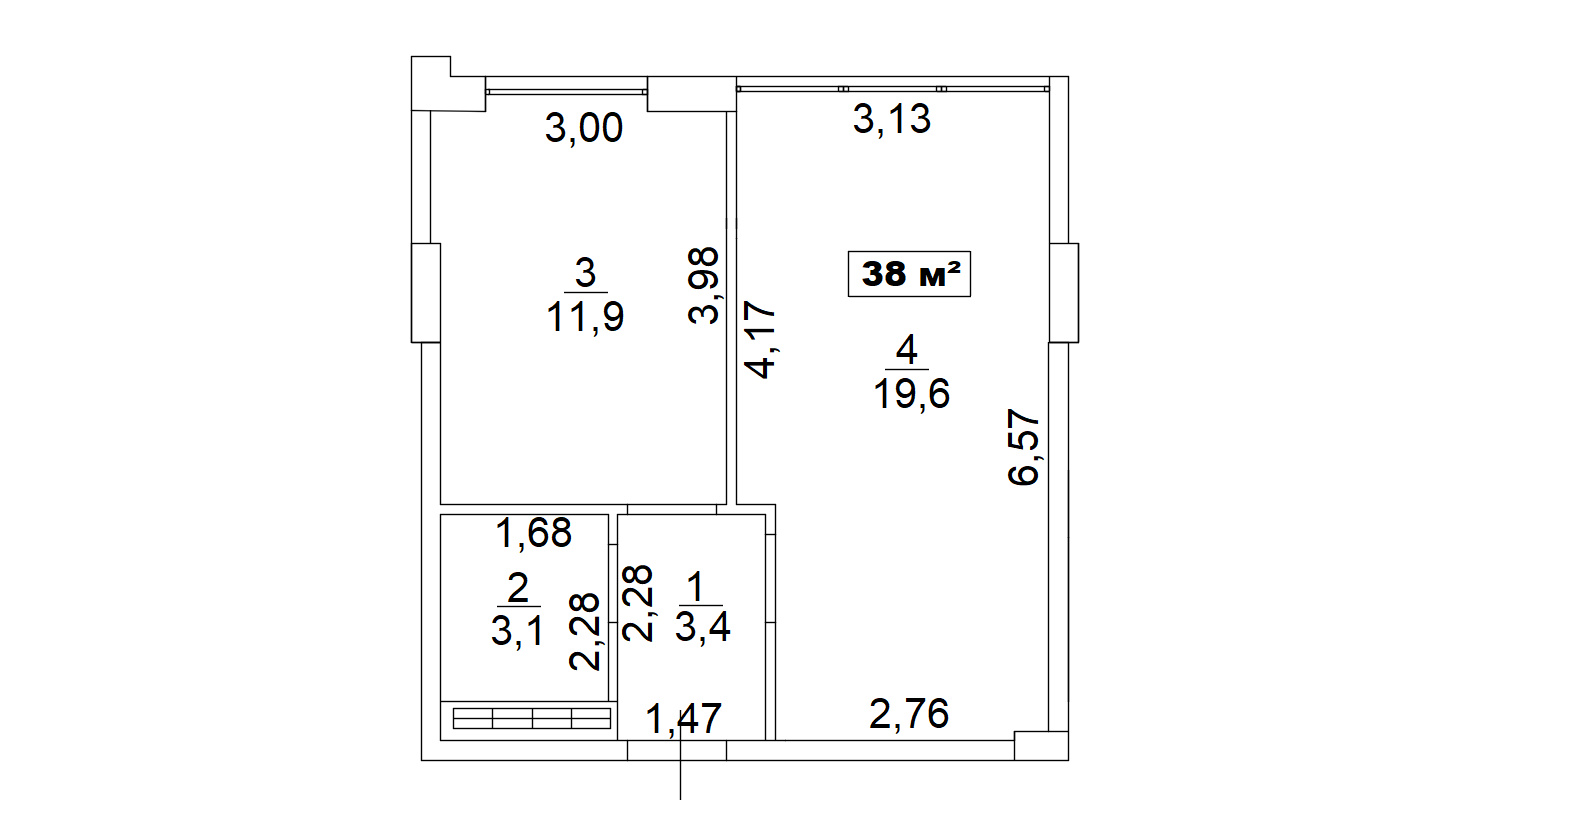 Планировка 1-к квартира площей 38м2, AB-13-07/00057.